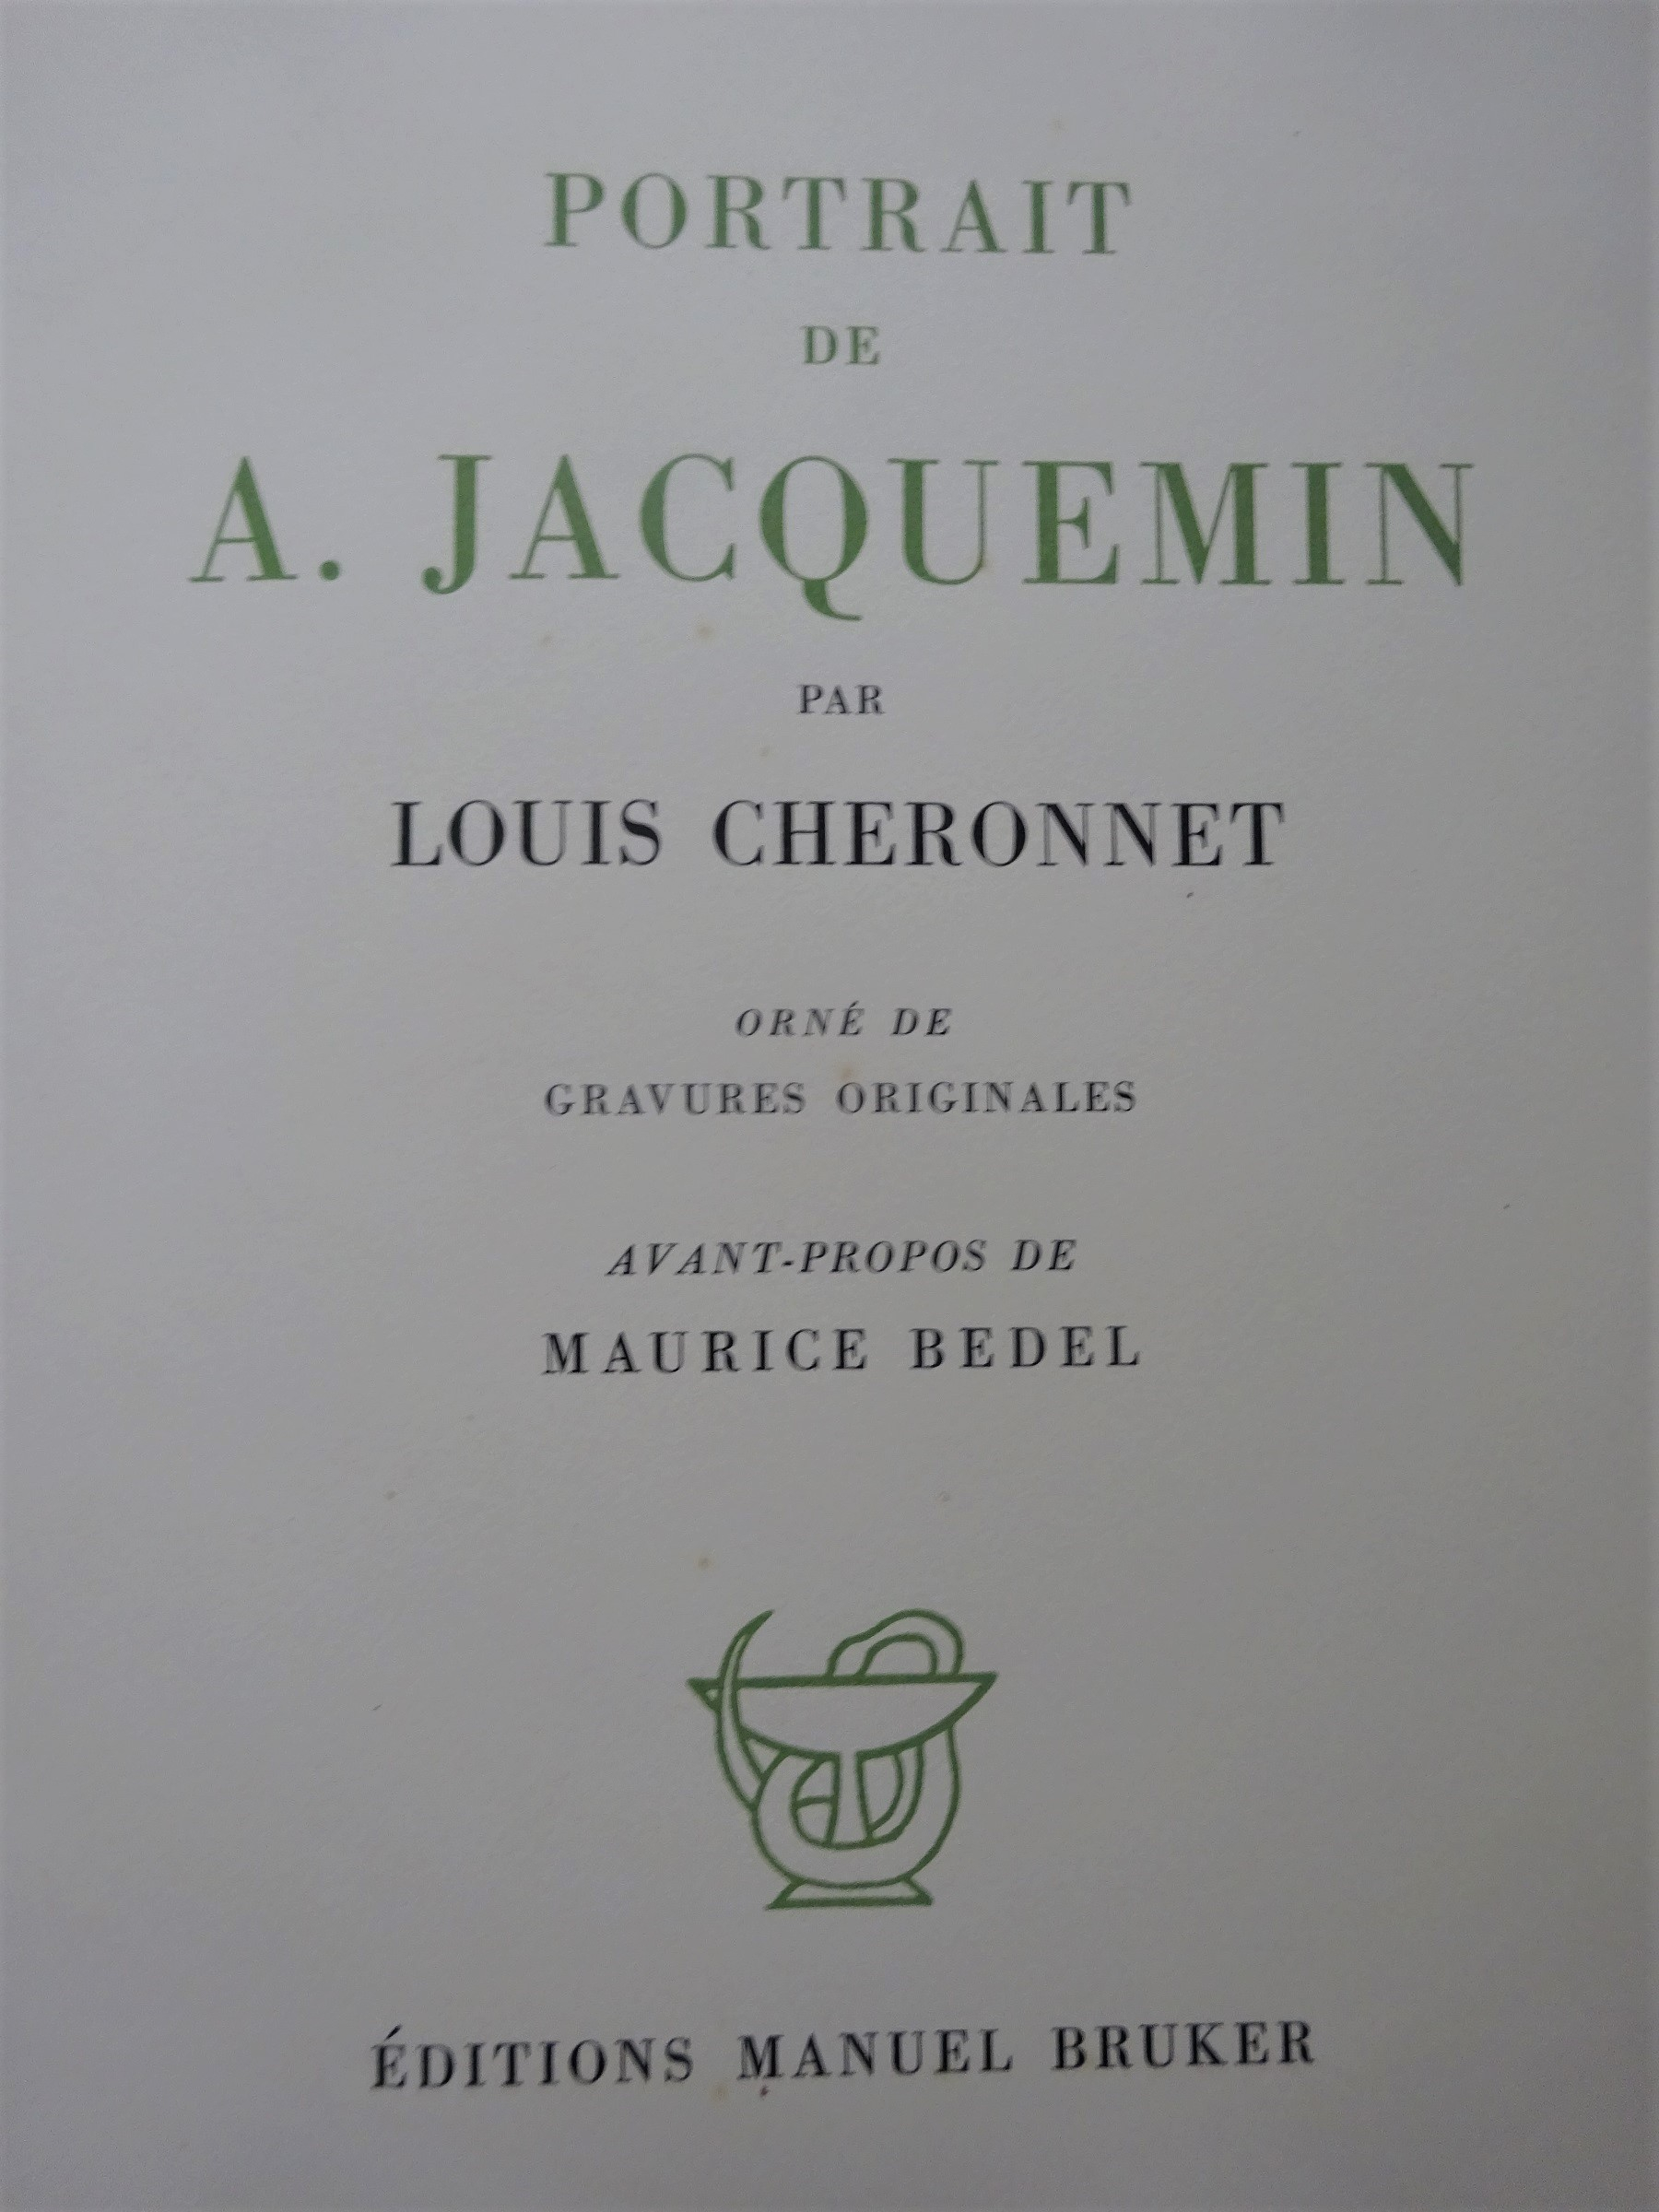 Portrait de A.Jacquemin